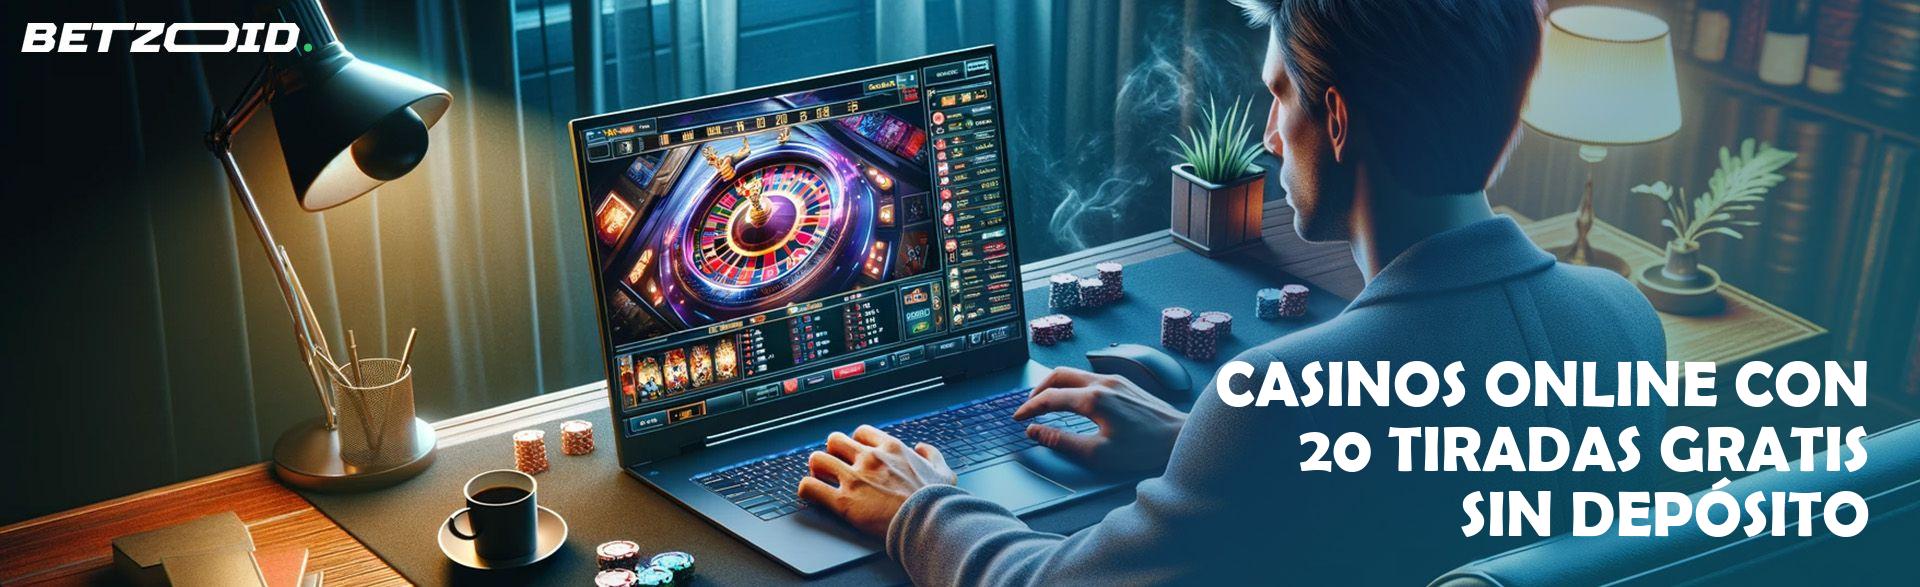 Casinos Online con 20 Tiradas Gratis sin Depósito.